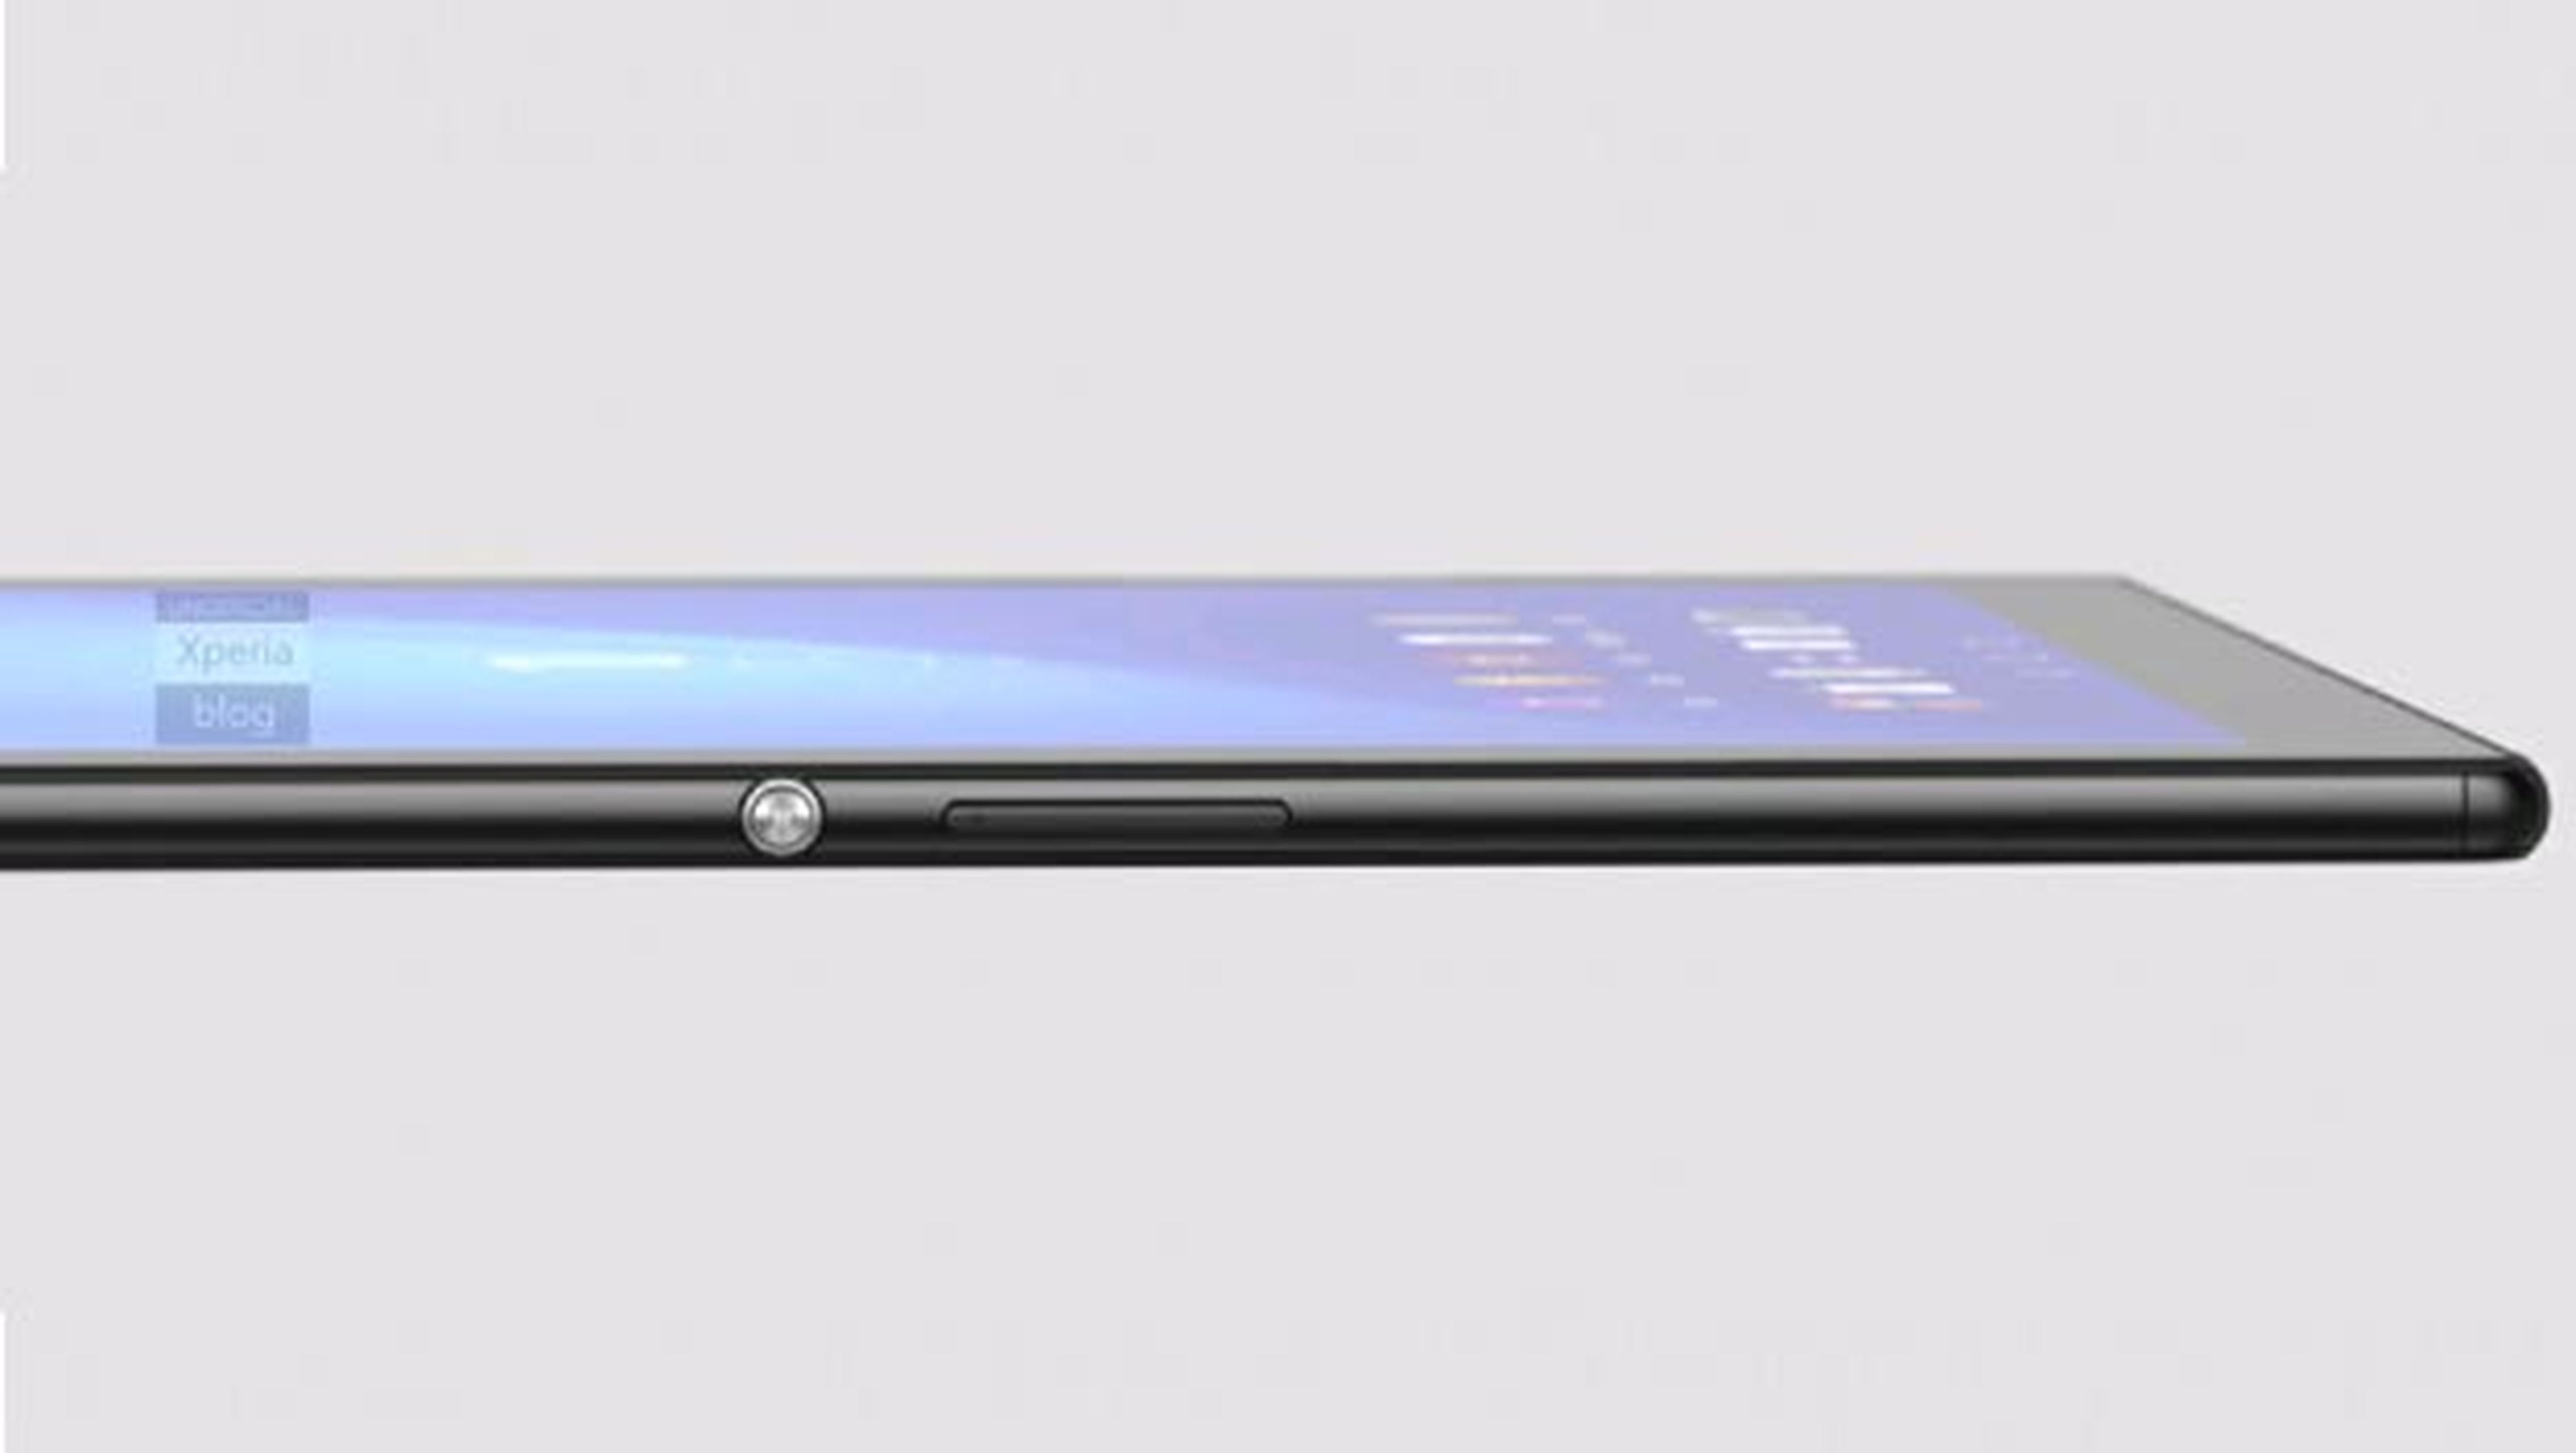 Sony confirma la Xperia Z3 Tablet con pantalla 2K